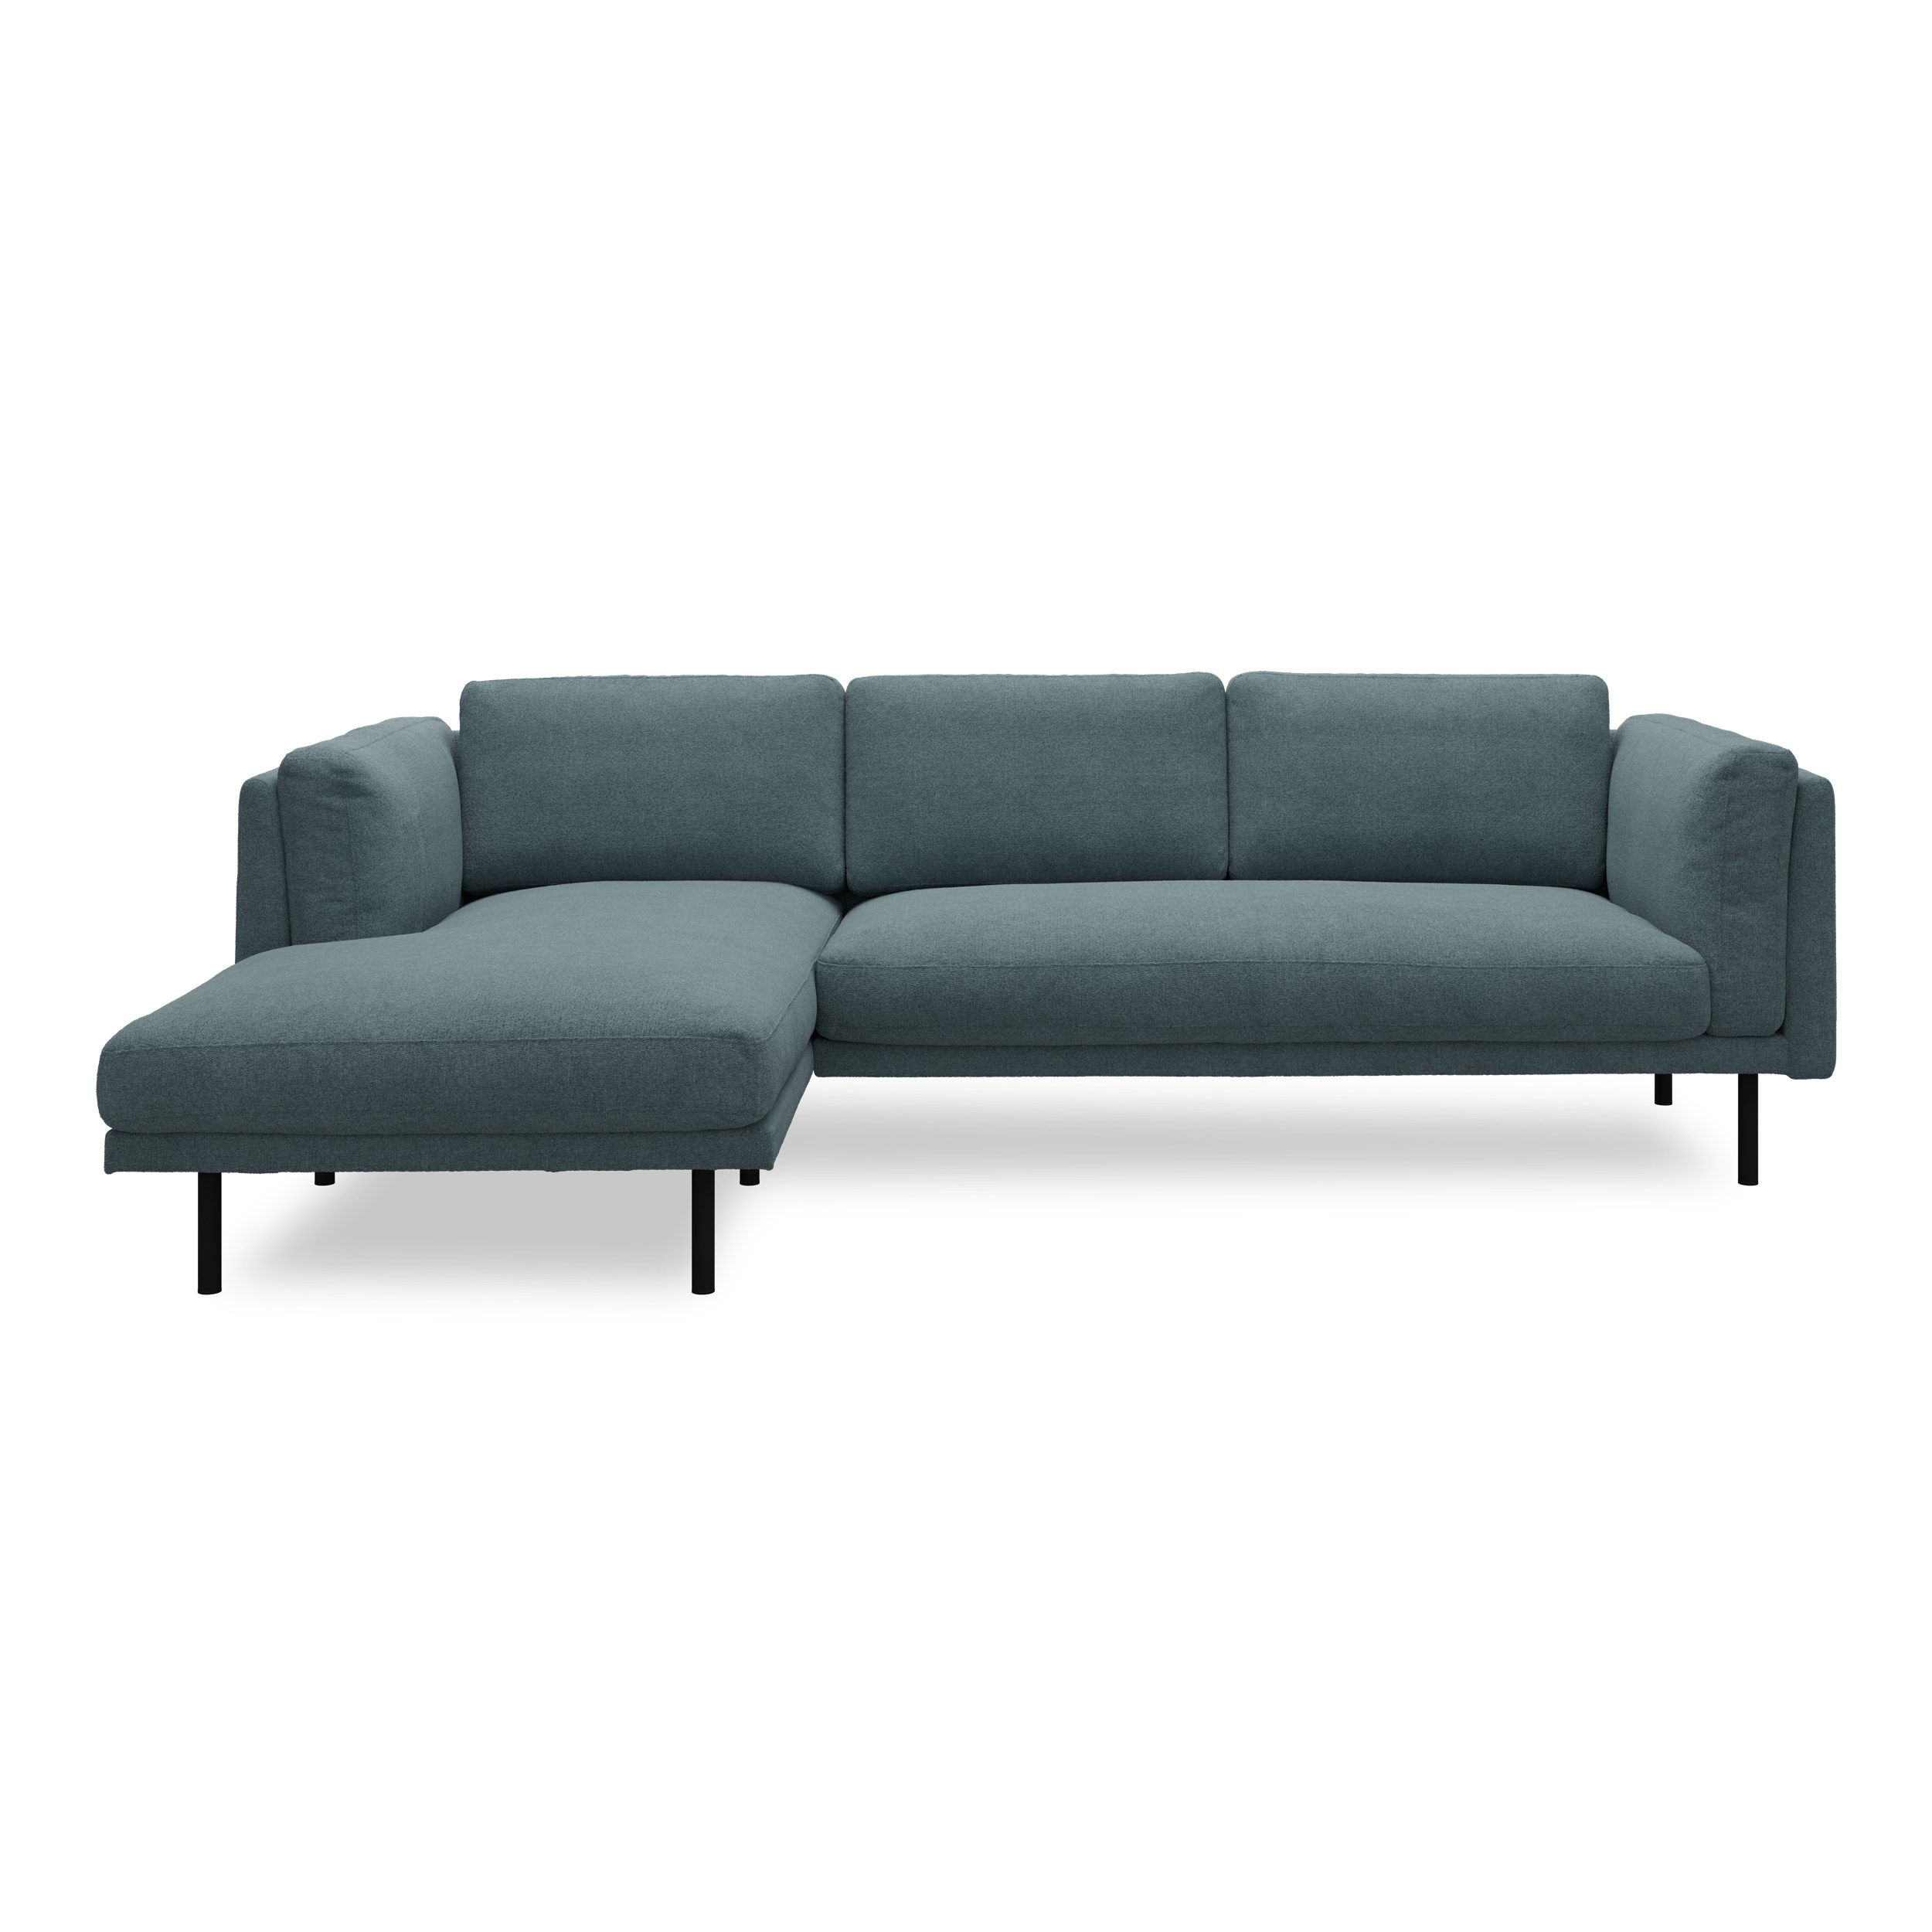 Nebel vänstervänd soffa med schäslong - Soil 90 Indigo textil och svart pulverlackerad metall